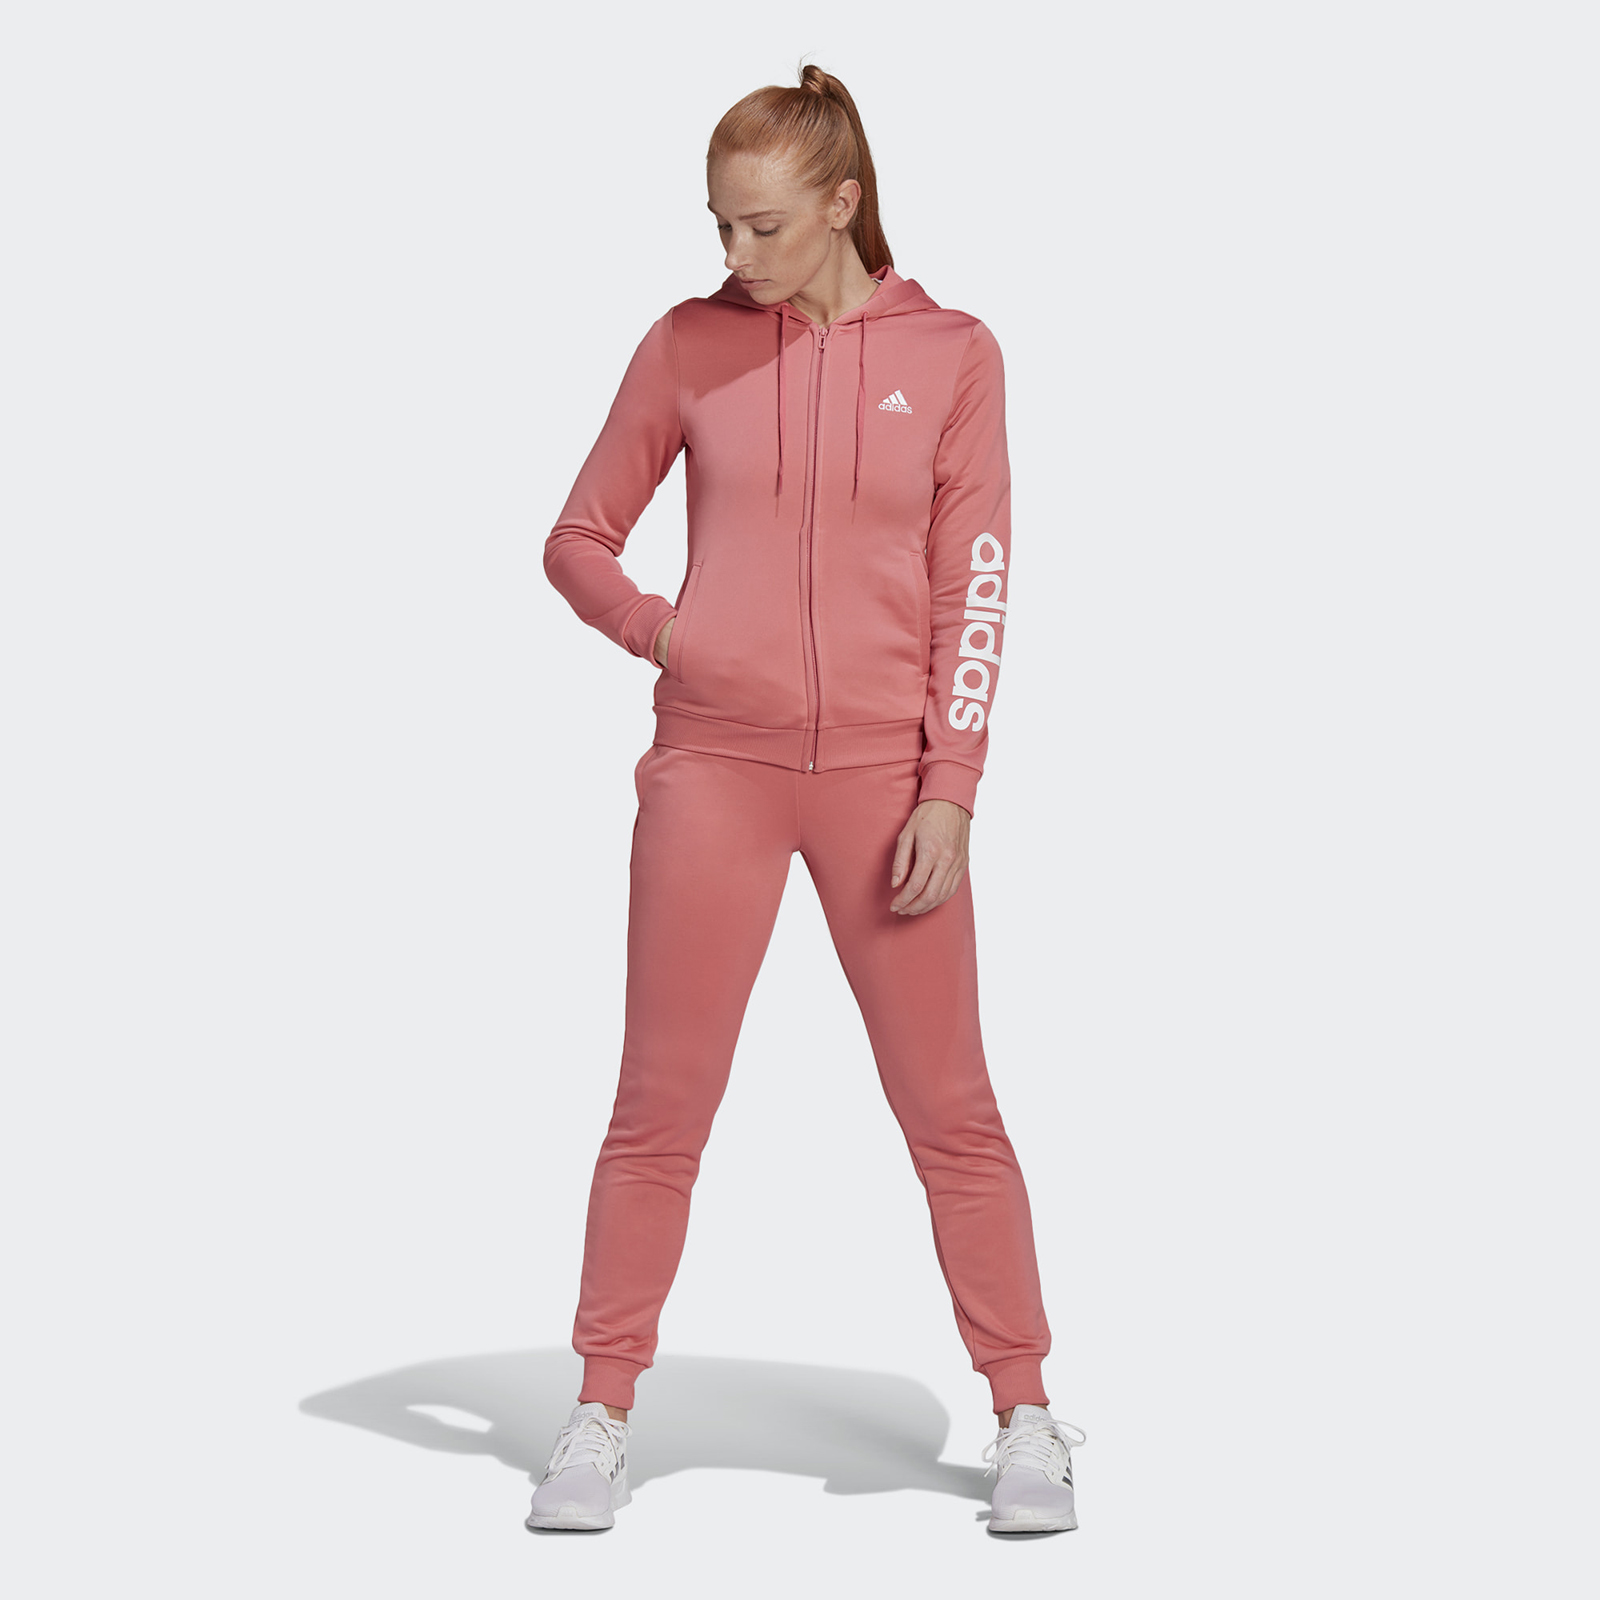 Купить Спортивный костюм женский Adidas W LIN FT TS розовый L 100028283317 в интернет магазине в Москве